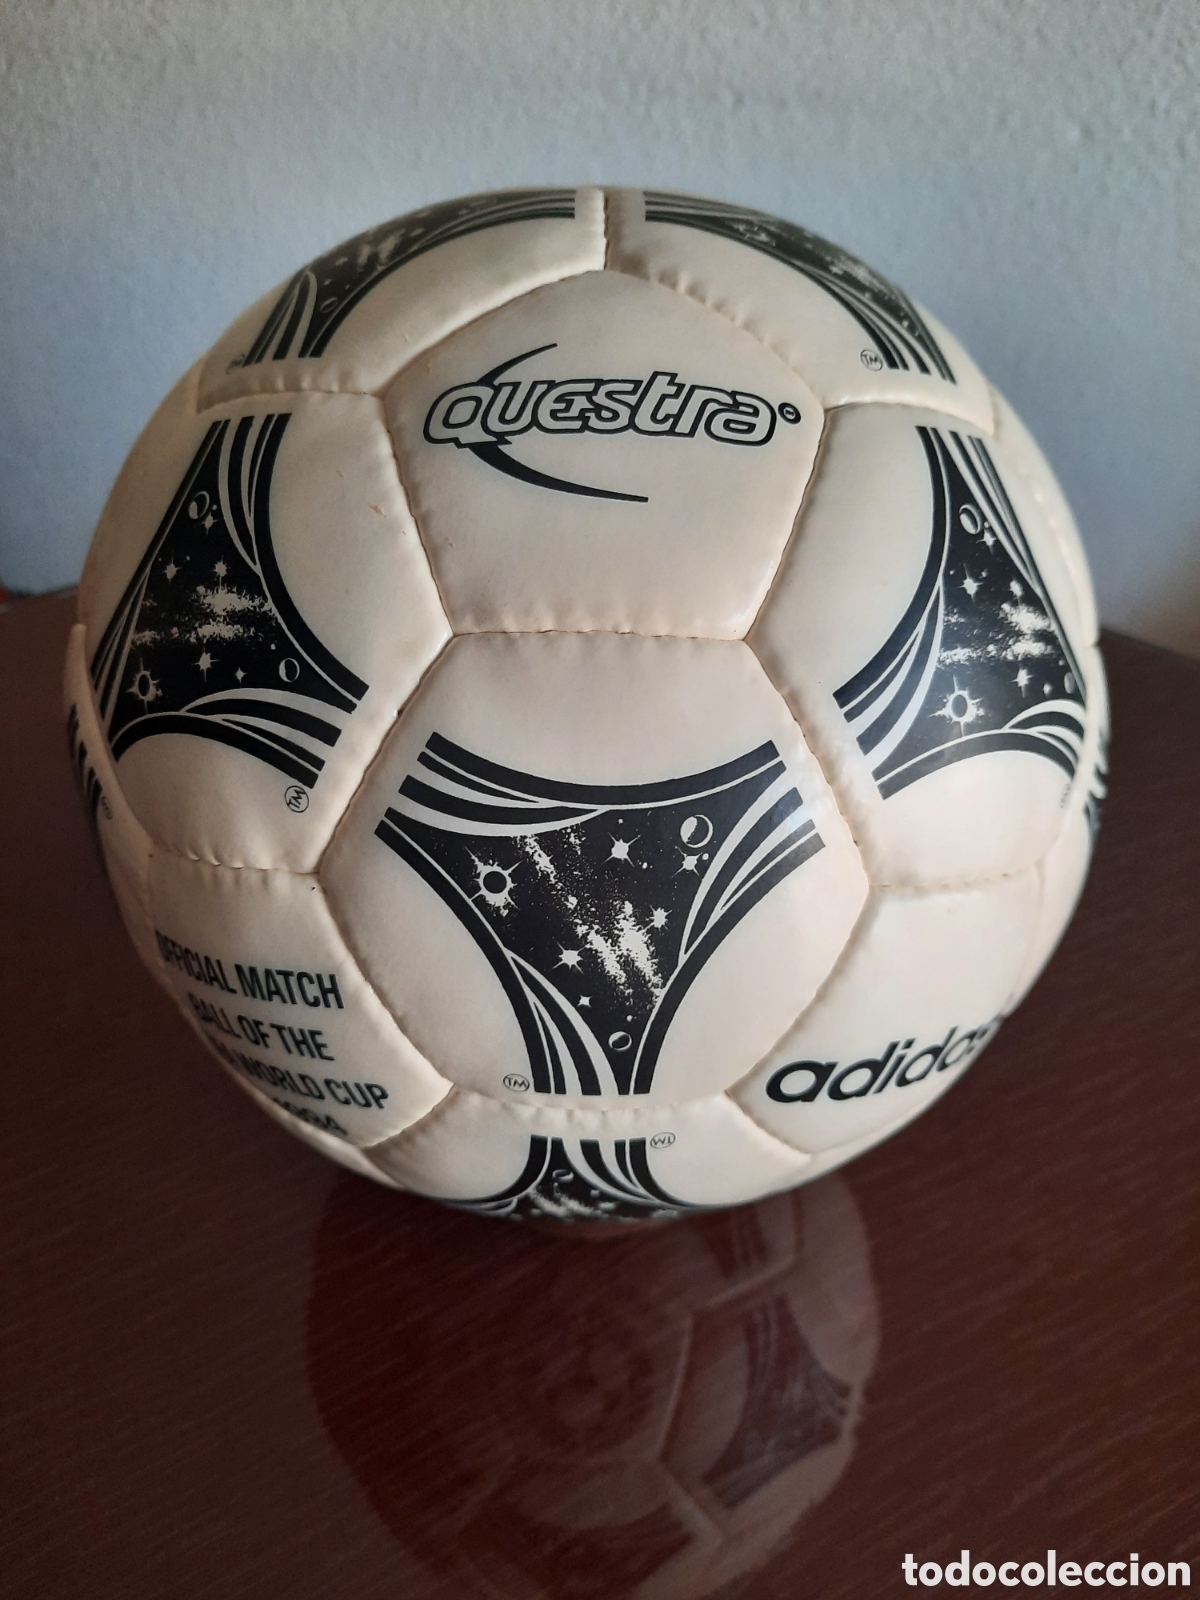 balón fútbol adidas 1994 - Buy Old Football at todocoleccion - 385191119